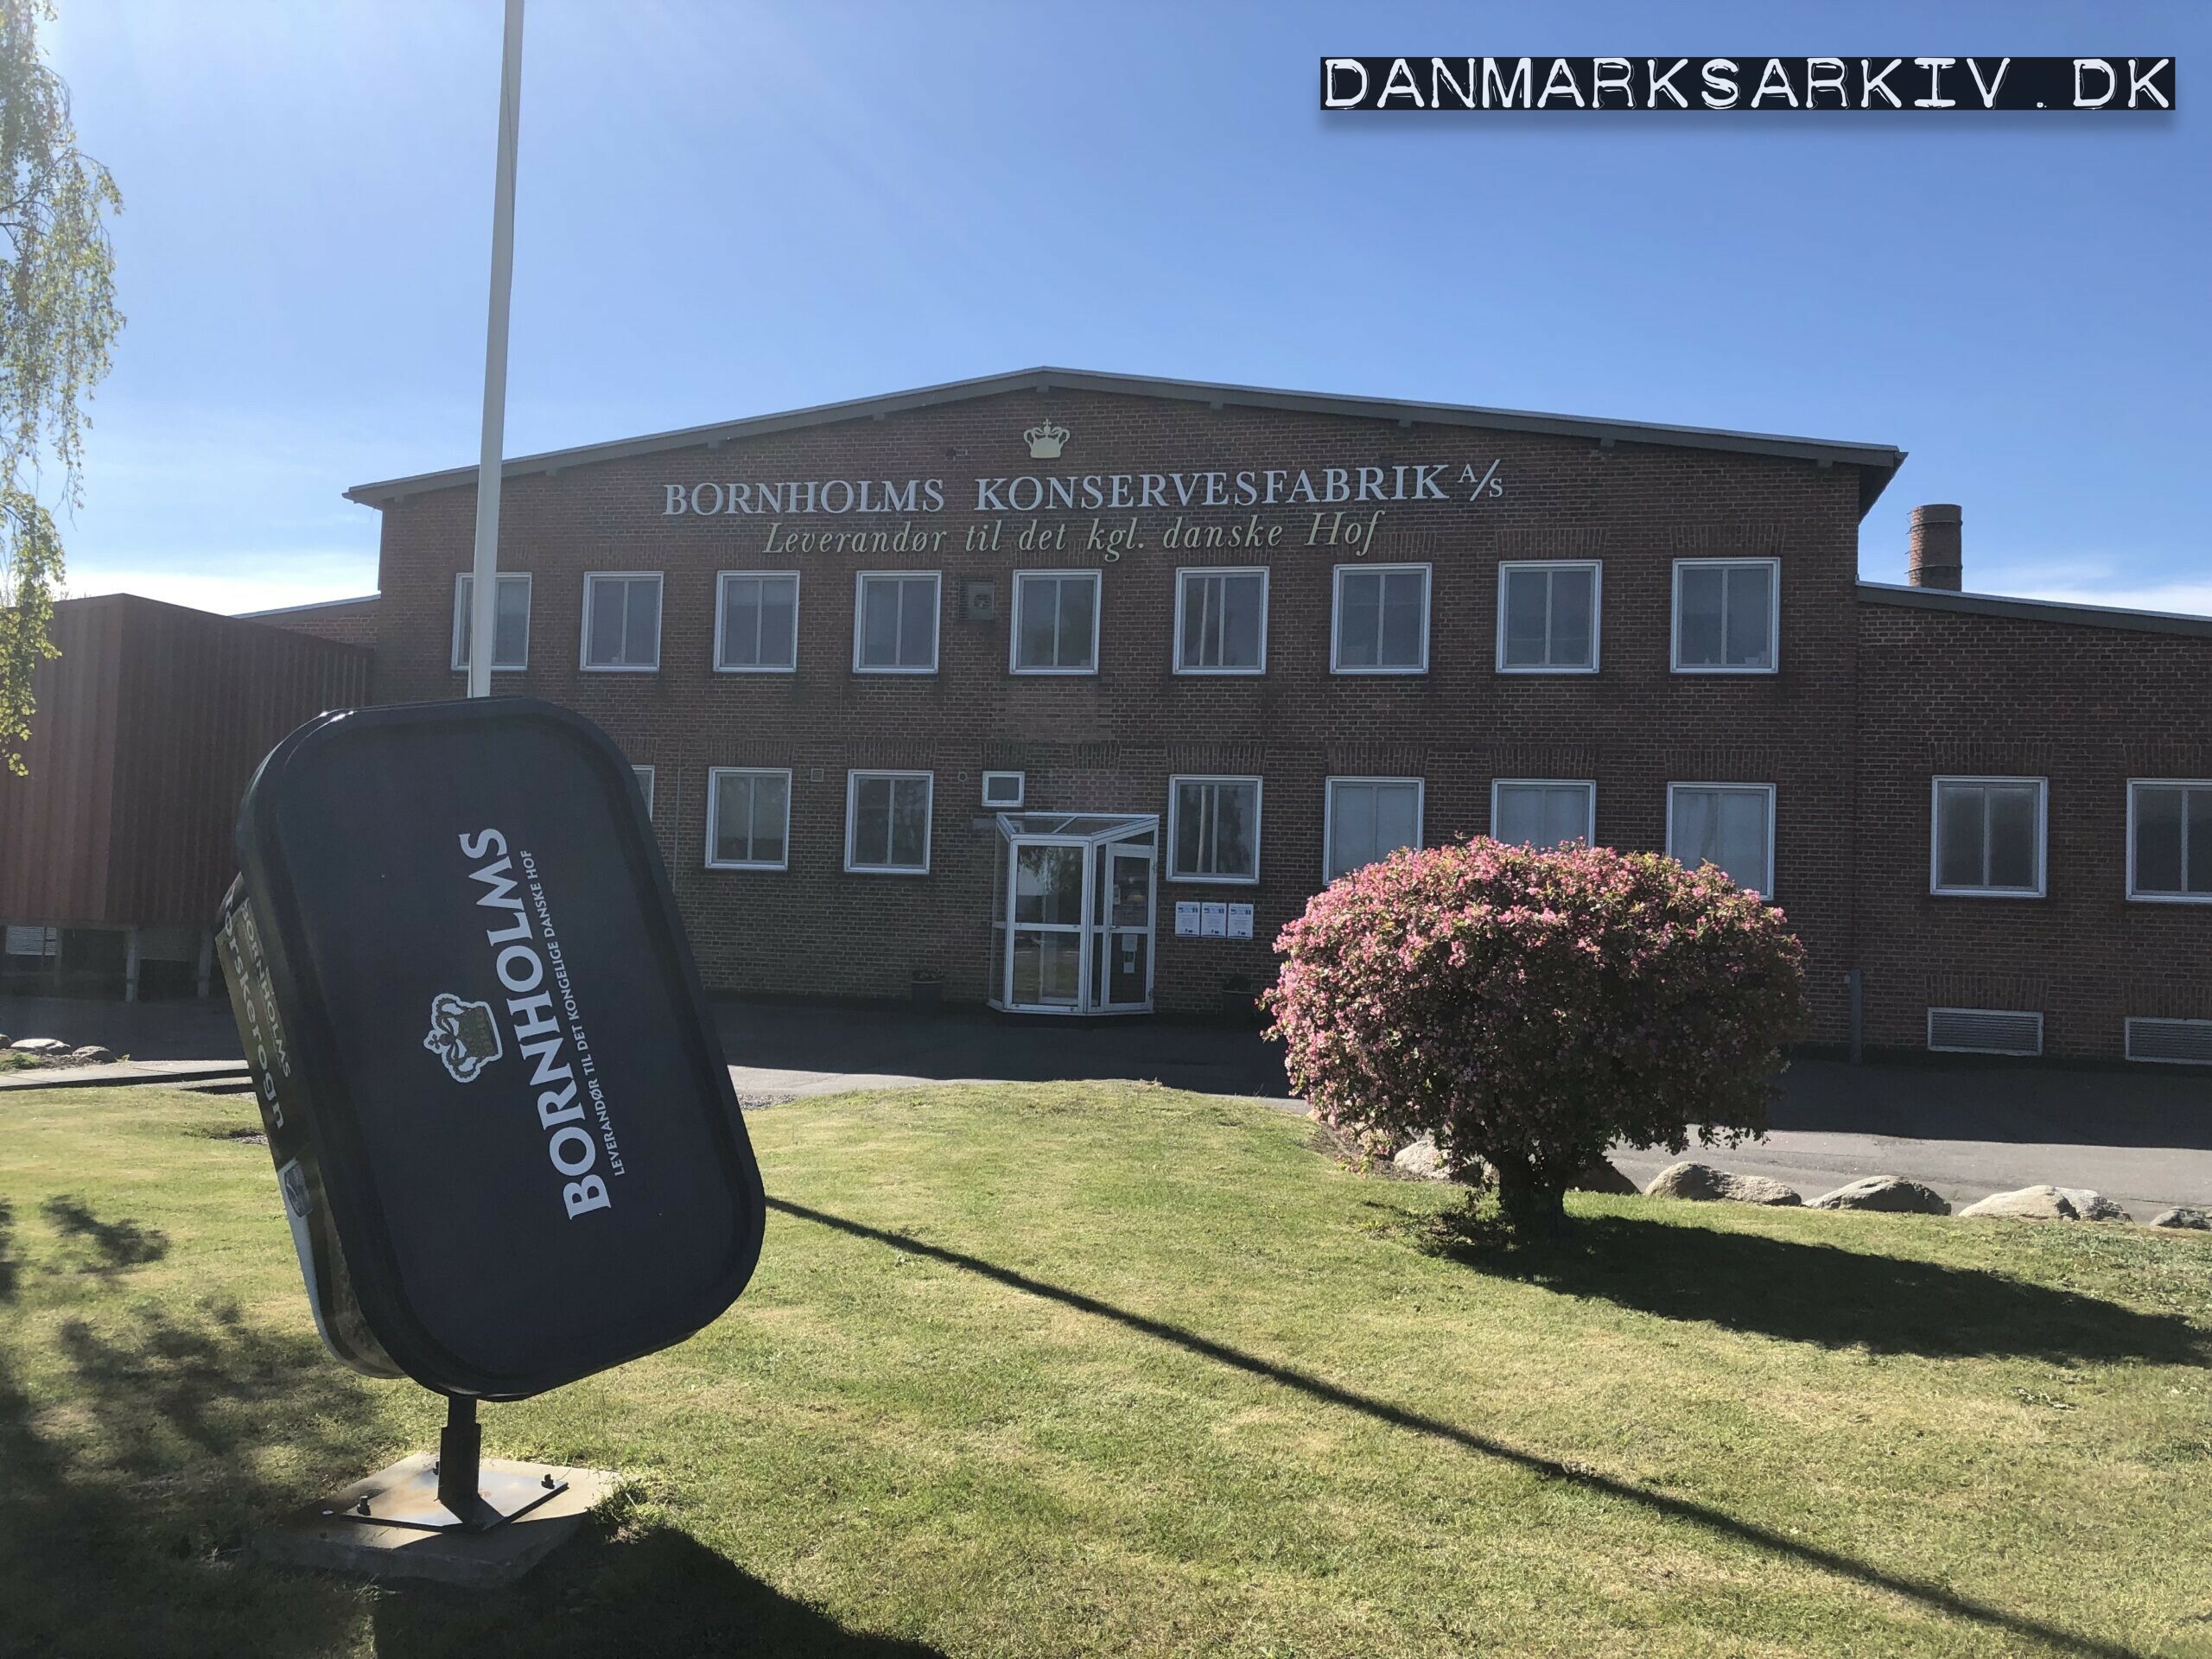 Bornholms Konservesfabrik A/S - Leverandør til det kgl. danske hof - 2019